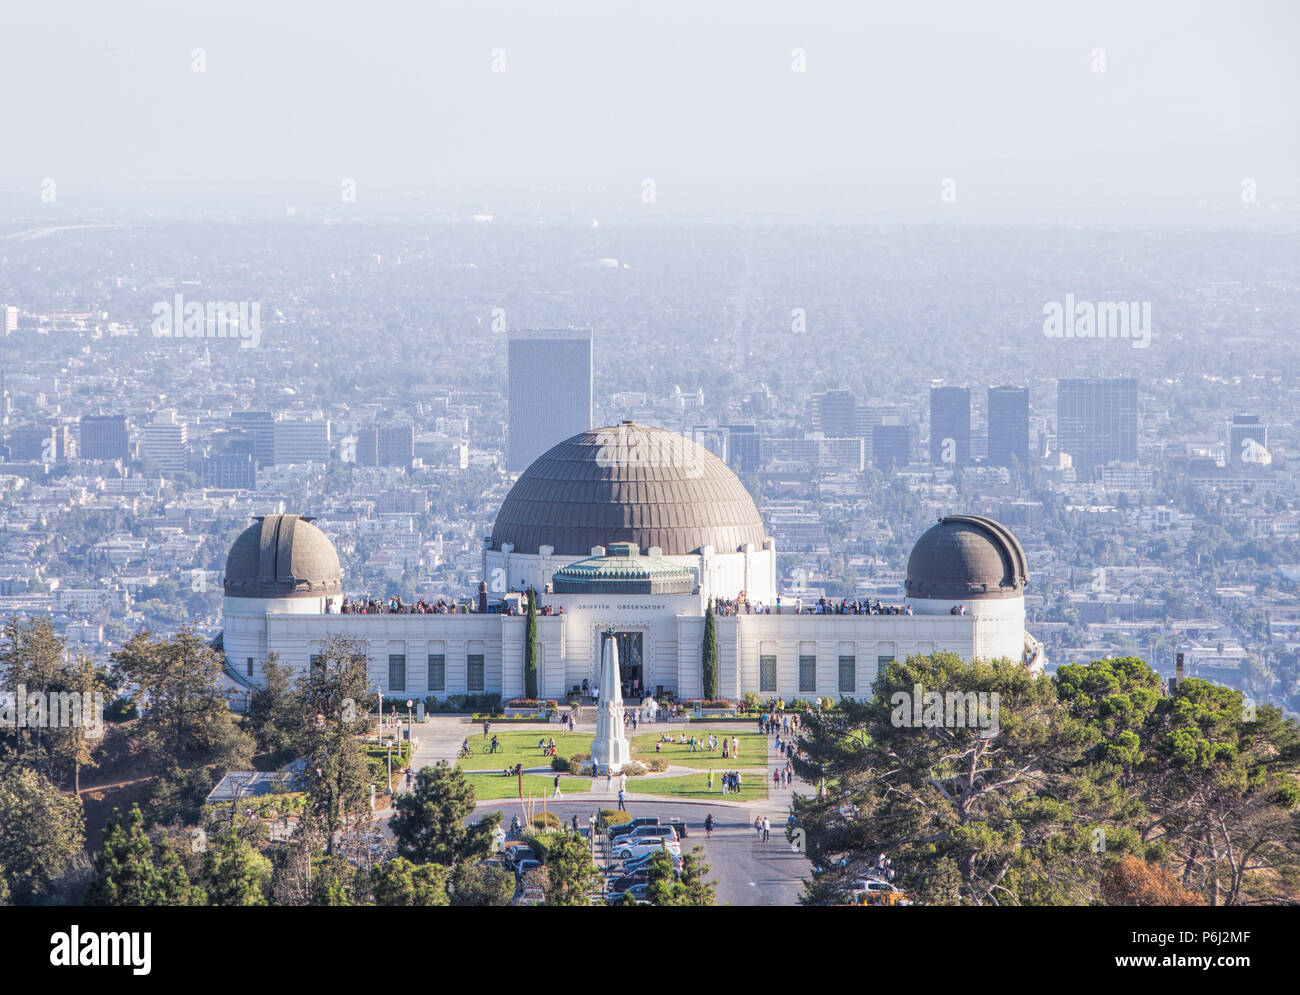 4 Septembre 2016 - Los Angeles, USA. Célèbre musée de l'Observatoire Griffith s'appuyant sur les collines de Hollywood. De nombreux touristes se rendant sur planetarium avec sceni Banque D'Images